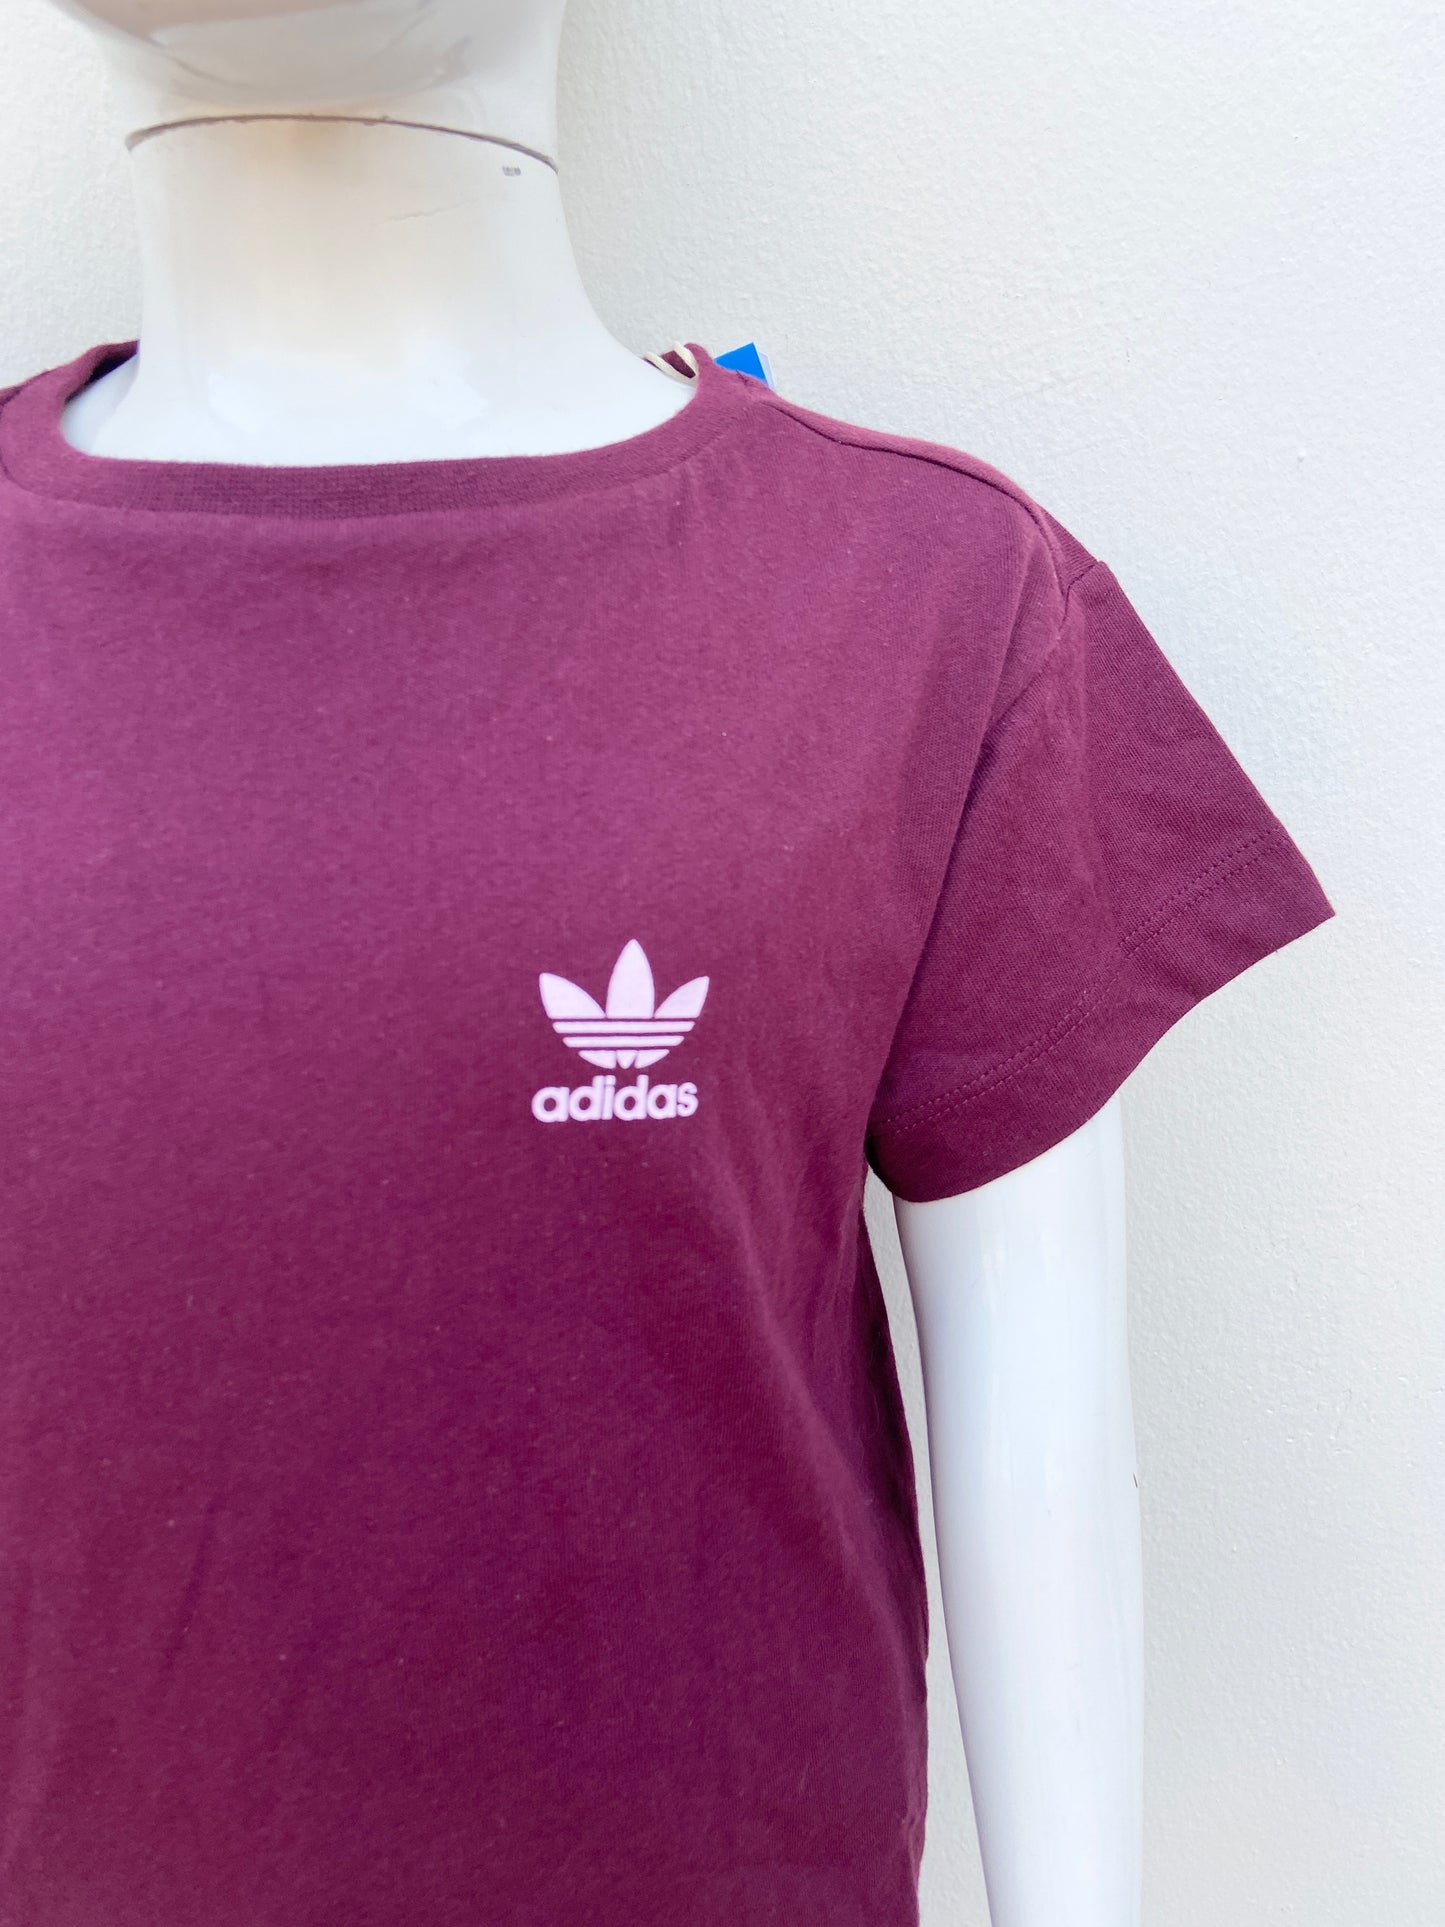 T-shirt Adidas original rojo vino con logotipo de la marca en blanco.